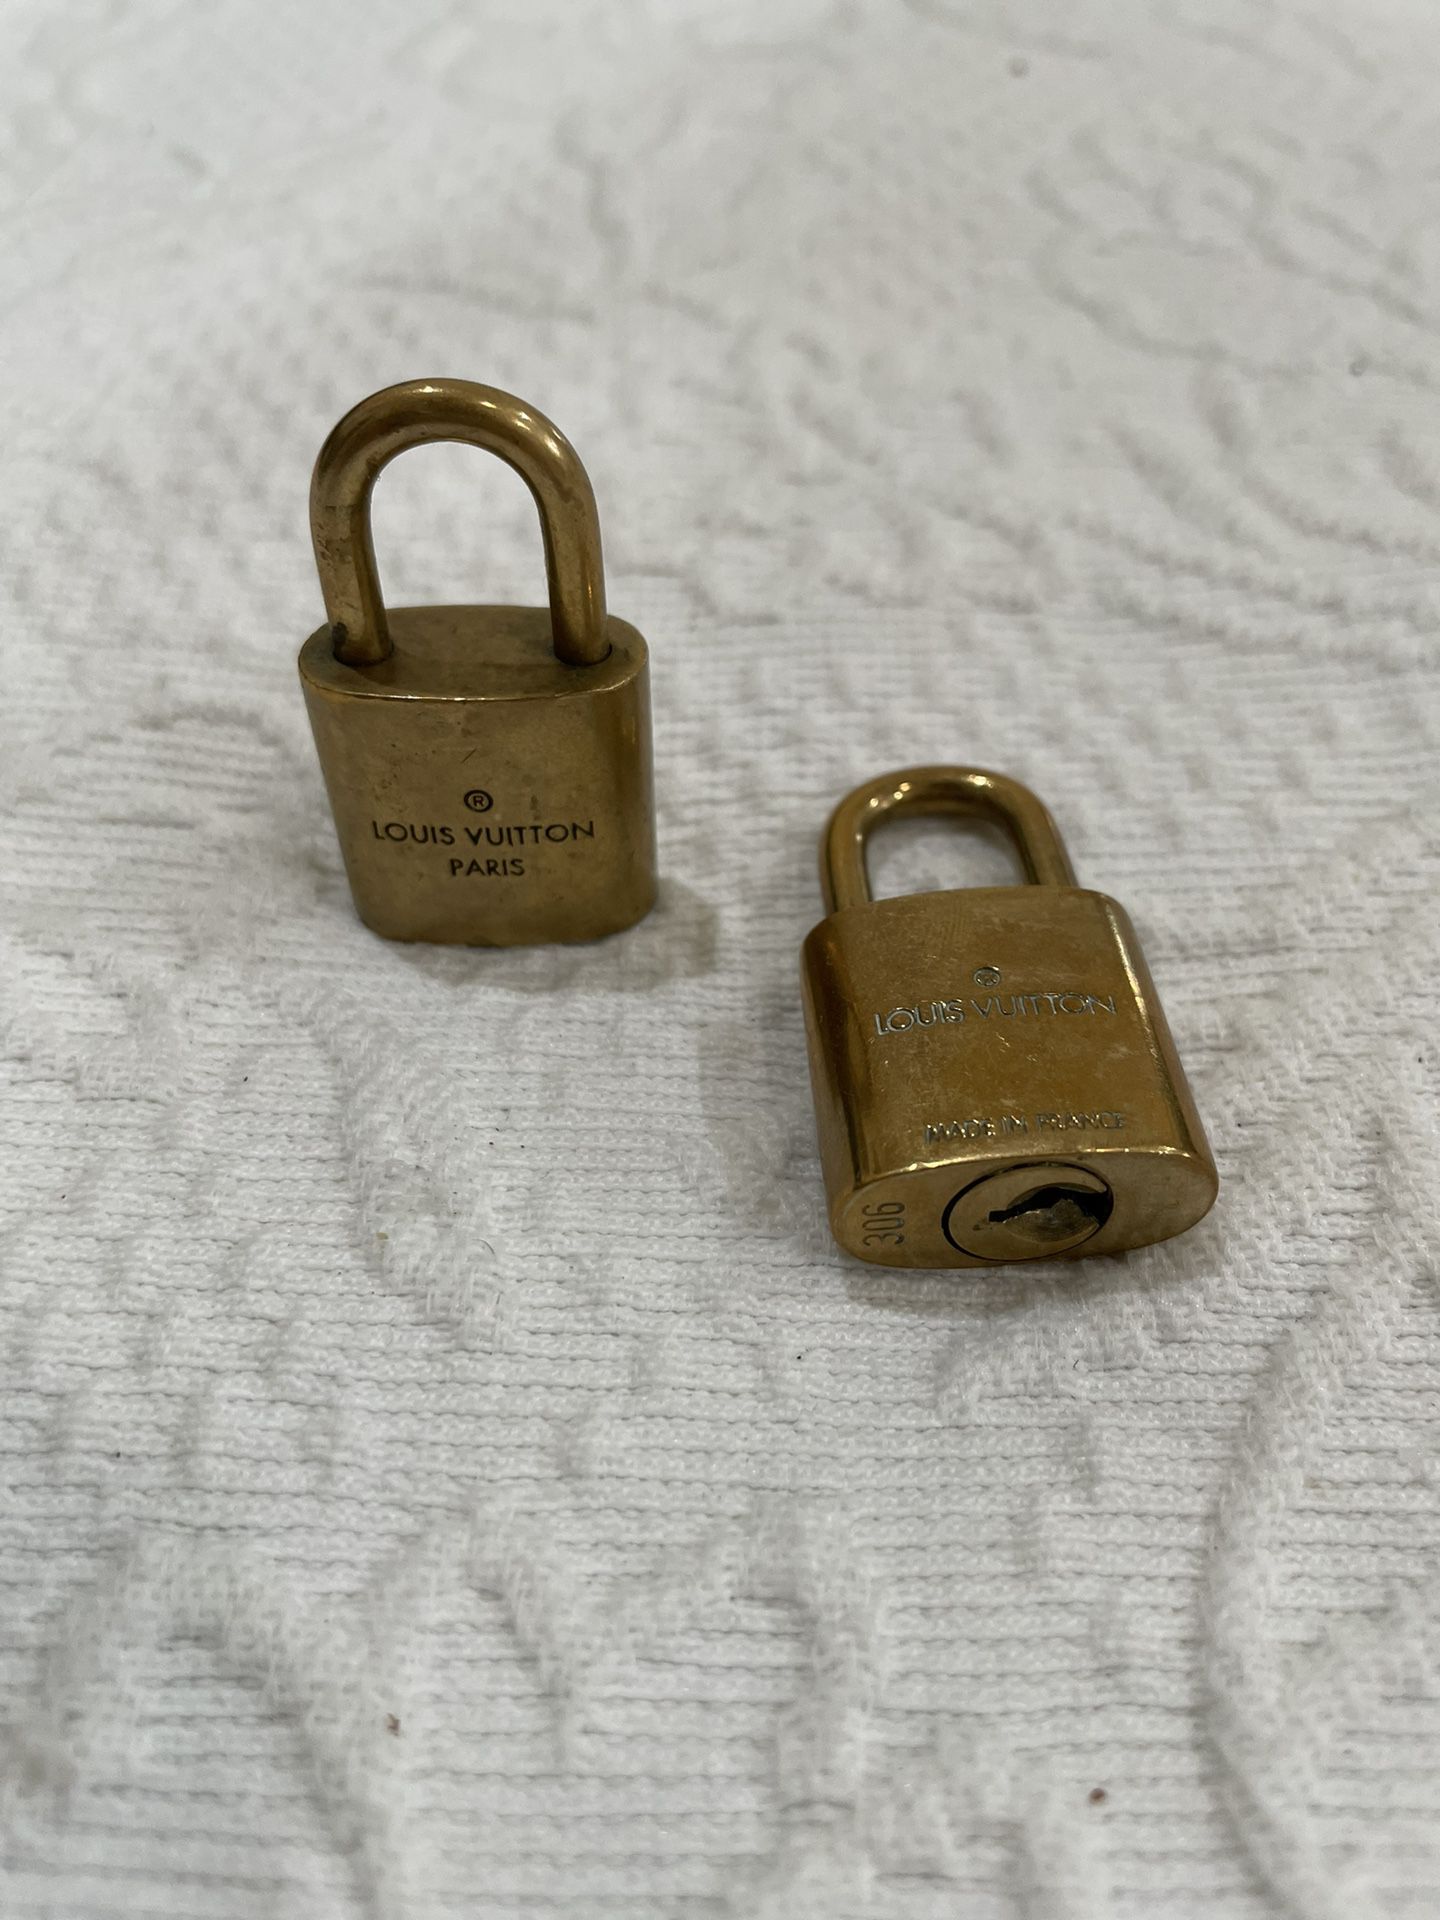 Antique Vintage Louis Vuitton Lock & Key